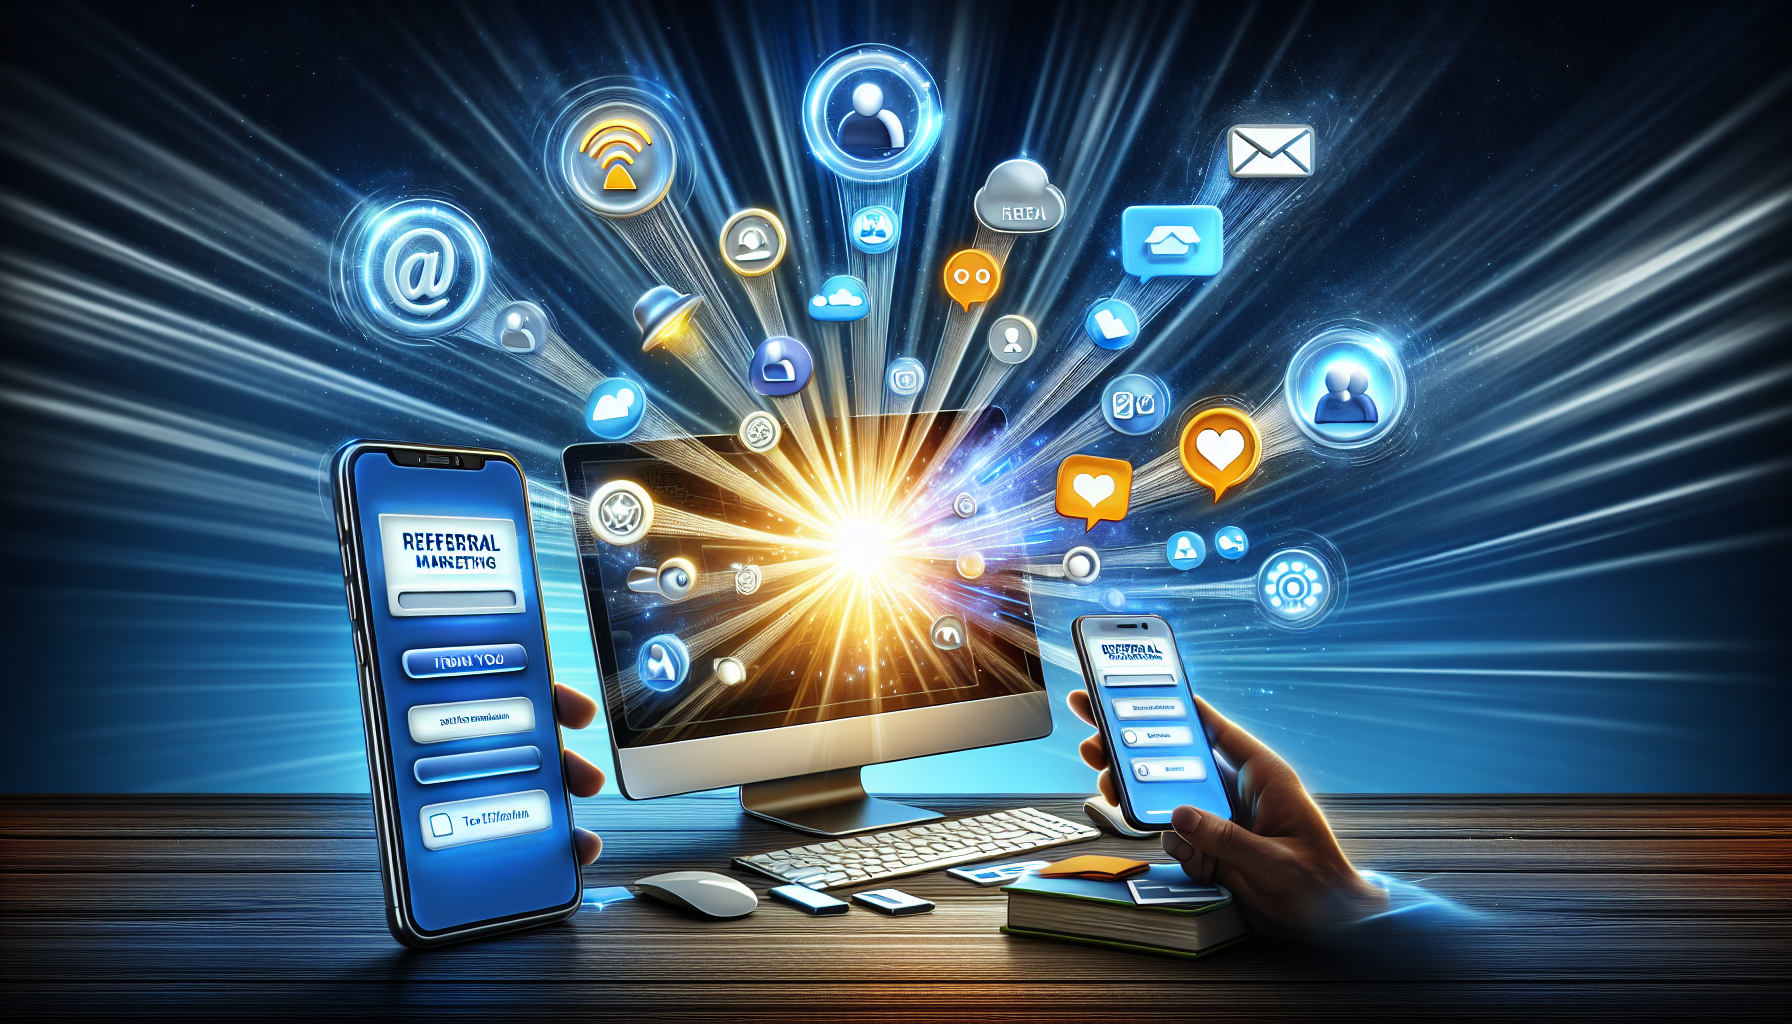 Ilustração de ferramentas e plataformas para marketing de referência, incluindo soluções de software, integração de redes sociais e marketing por correio eletrónico